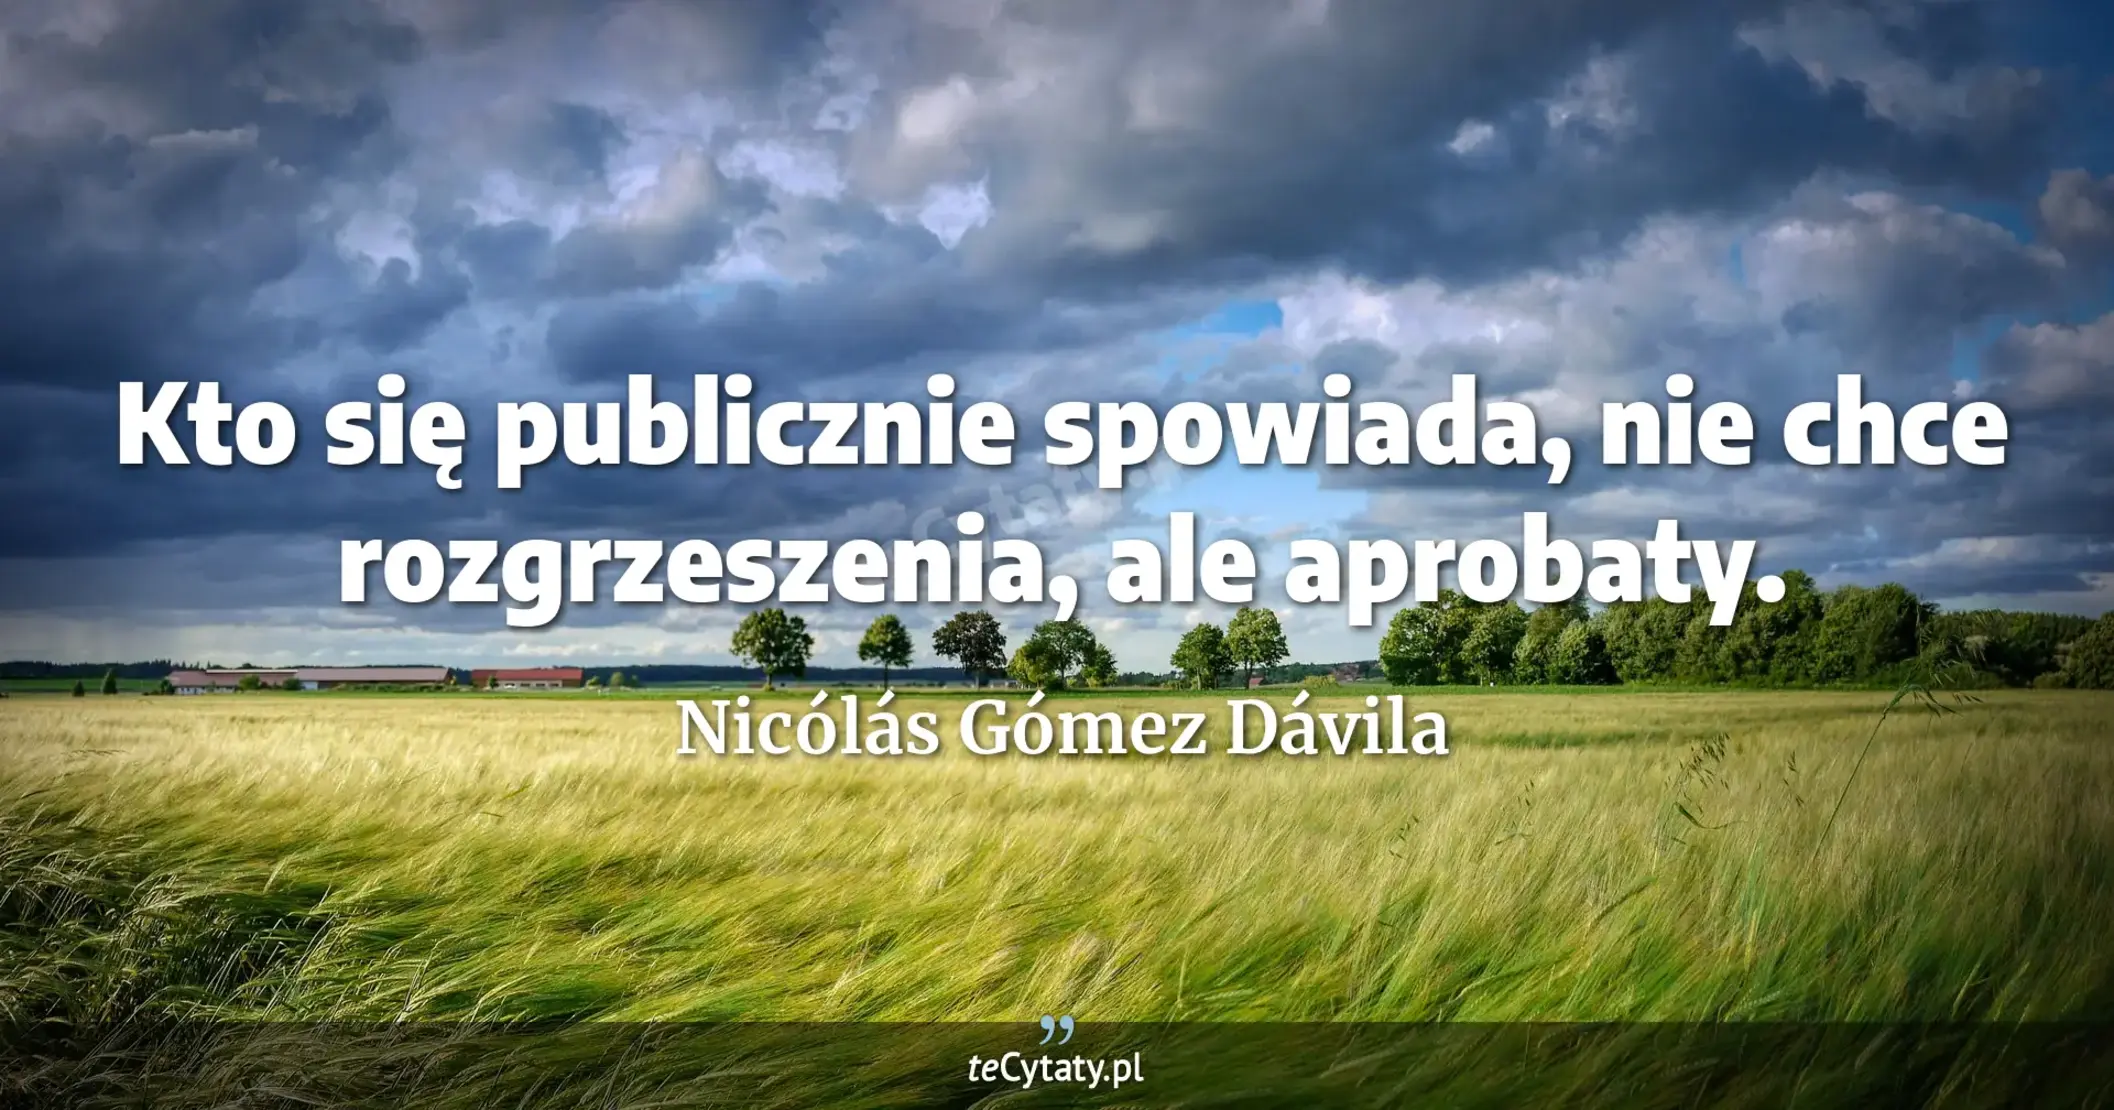 Kto się publicznie spowiada, nie chce rozgrzeszenia, ale aprobaty. - Nicólás Gómez Dávila